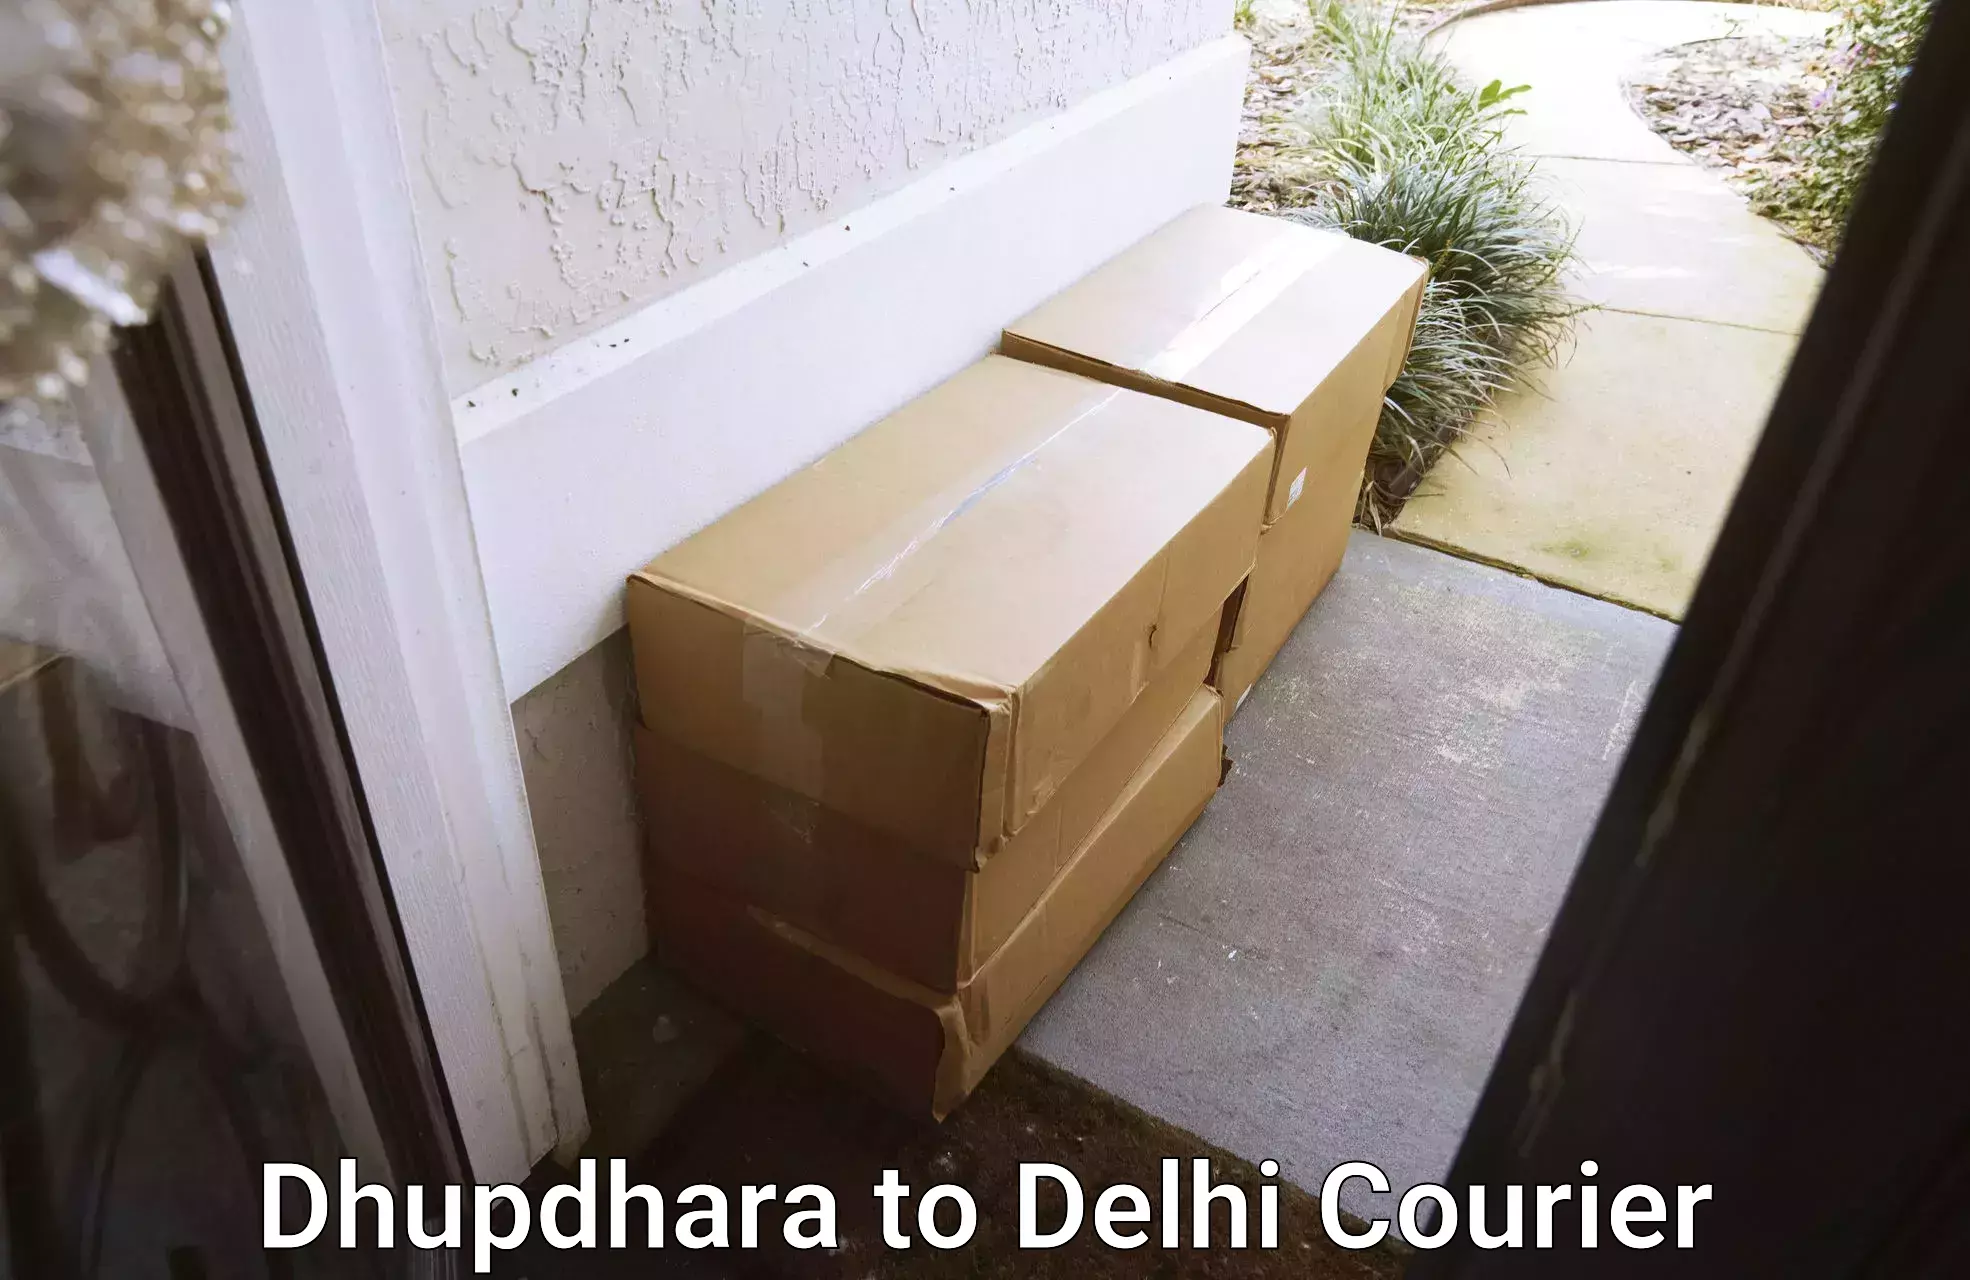 Air courier services Dhupdhara to Jamia Millia Islamia New Delhi